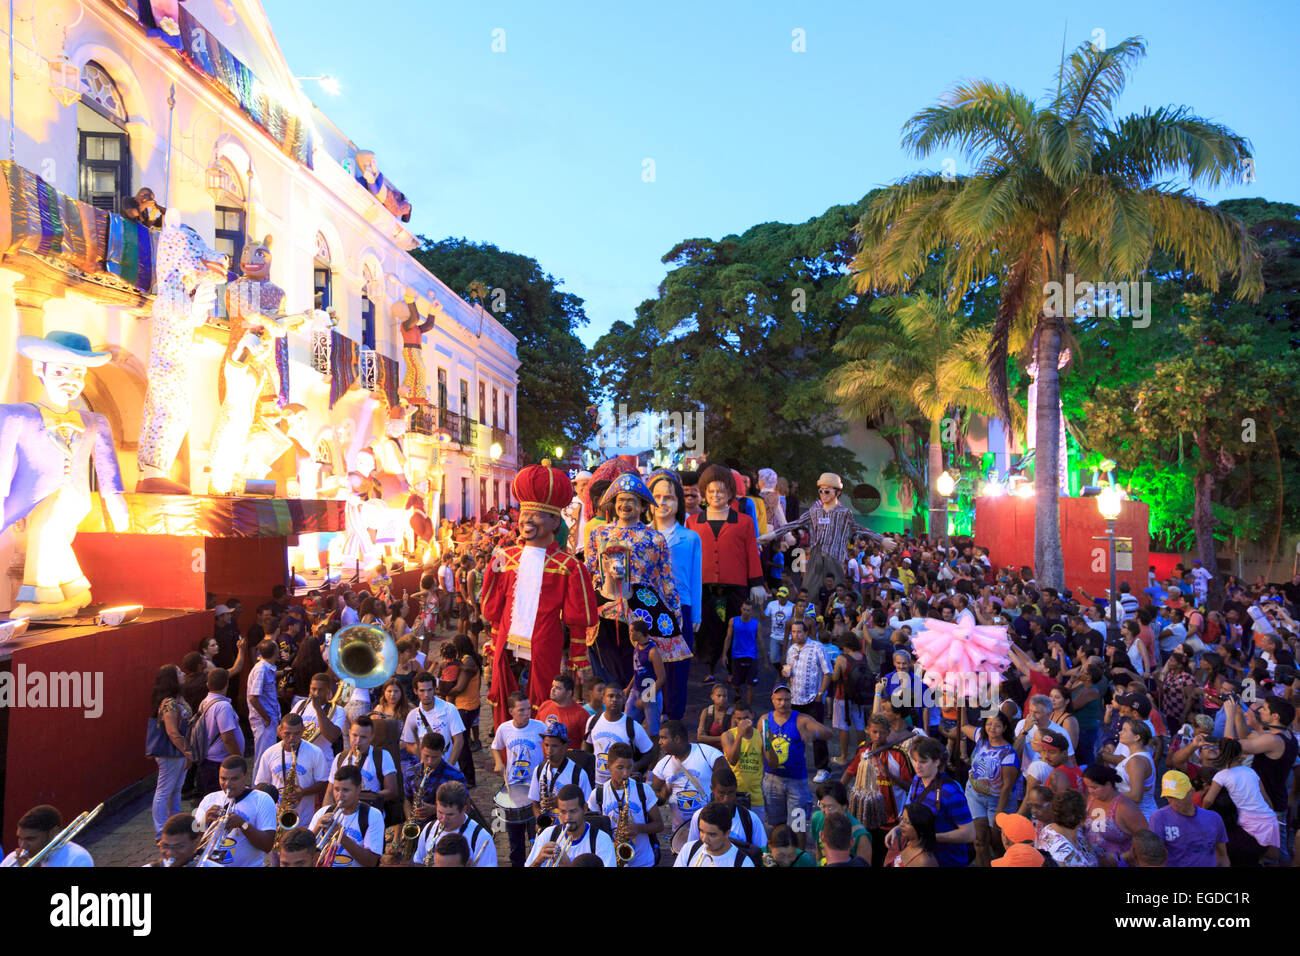 Brasil, Pernambuco, Olinda Città Vecchia (Sito UNESCO), pupazzi giganti durante la celebrazione Carnaval Foto Stock